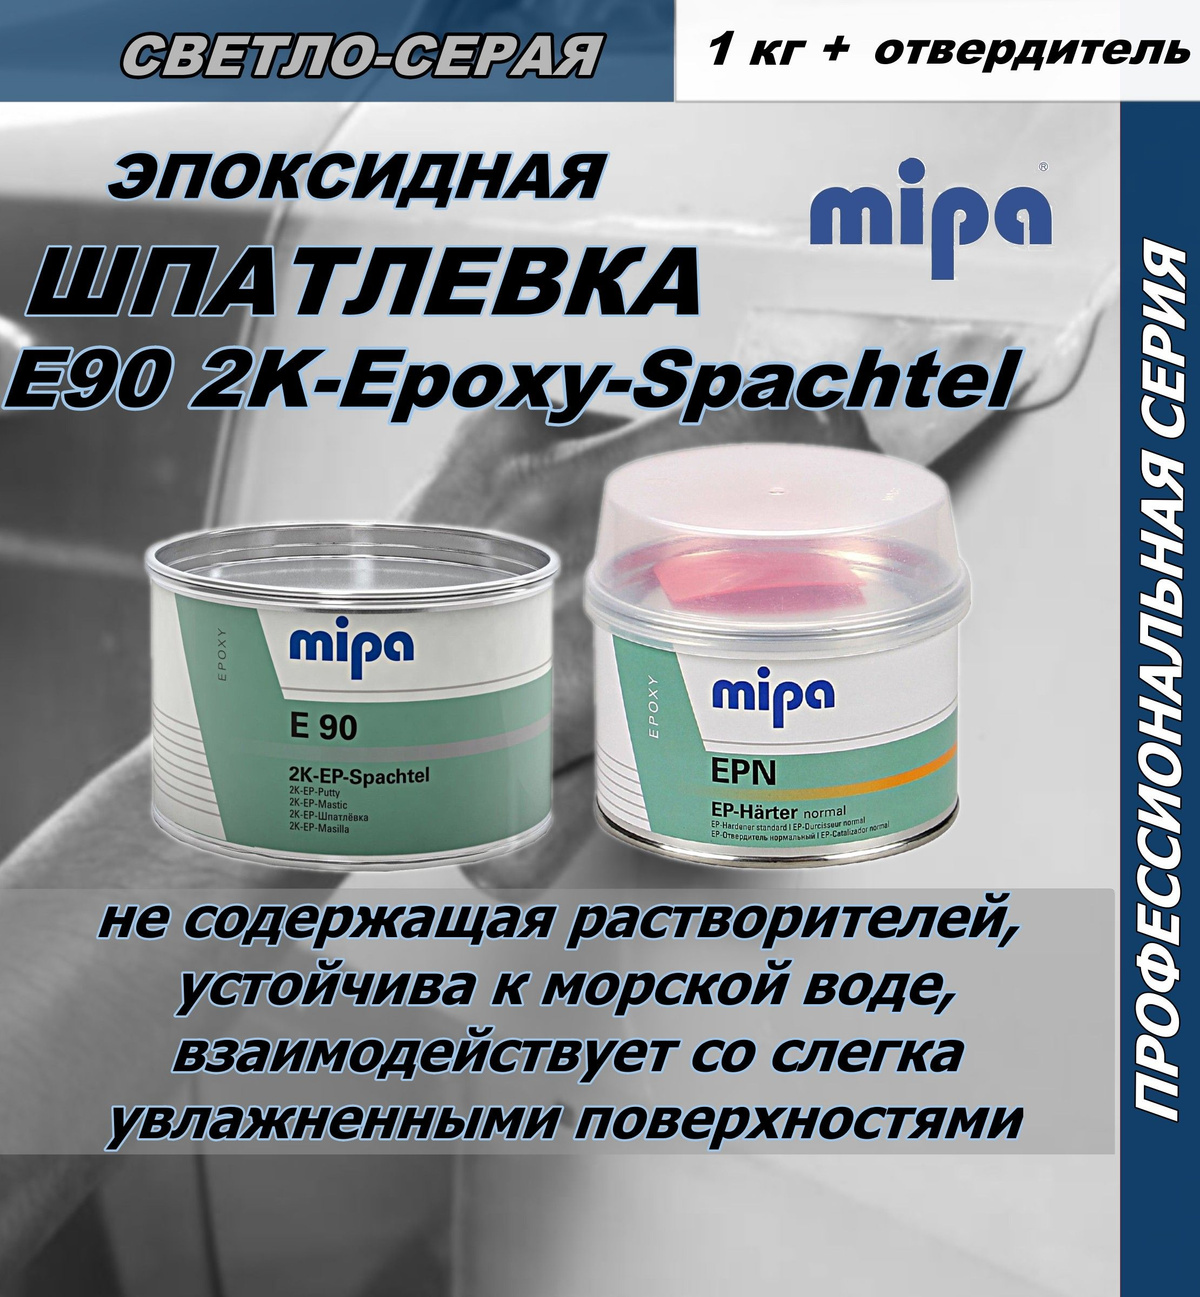 Шпатлевка Mipa E90 2K-Epoxy-Spachtel эпоксидная 1кг. с отвердителем